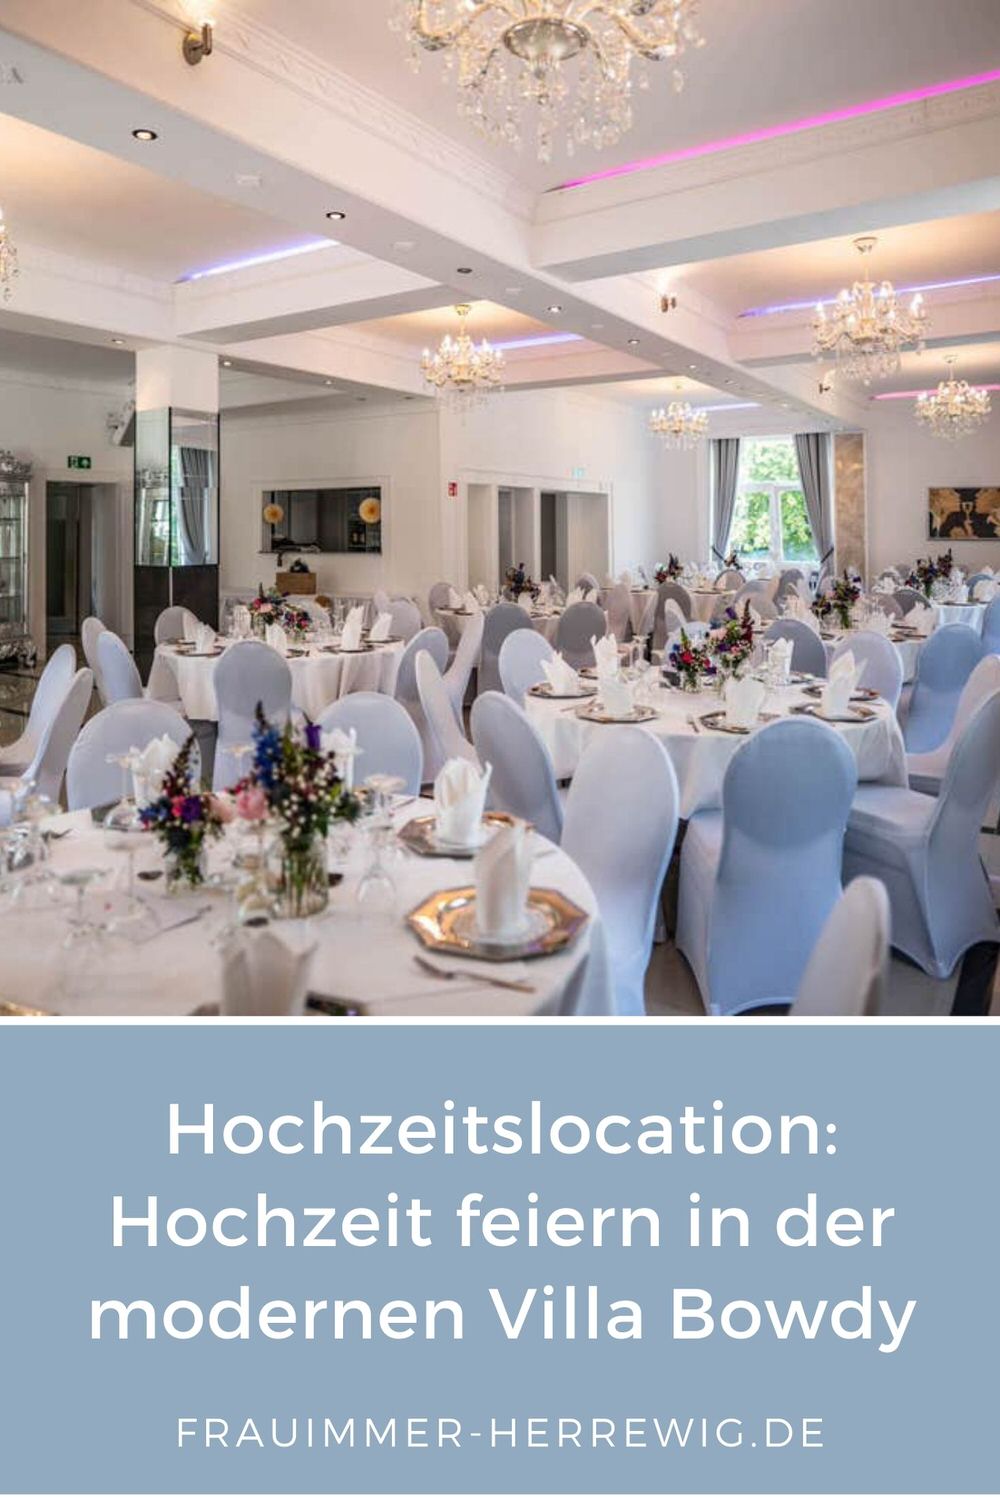 Hochzeitslocation villa bowdy – gesehen bei frauimmer-herrewig.de